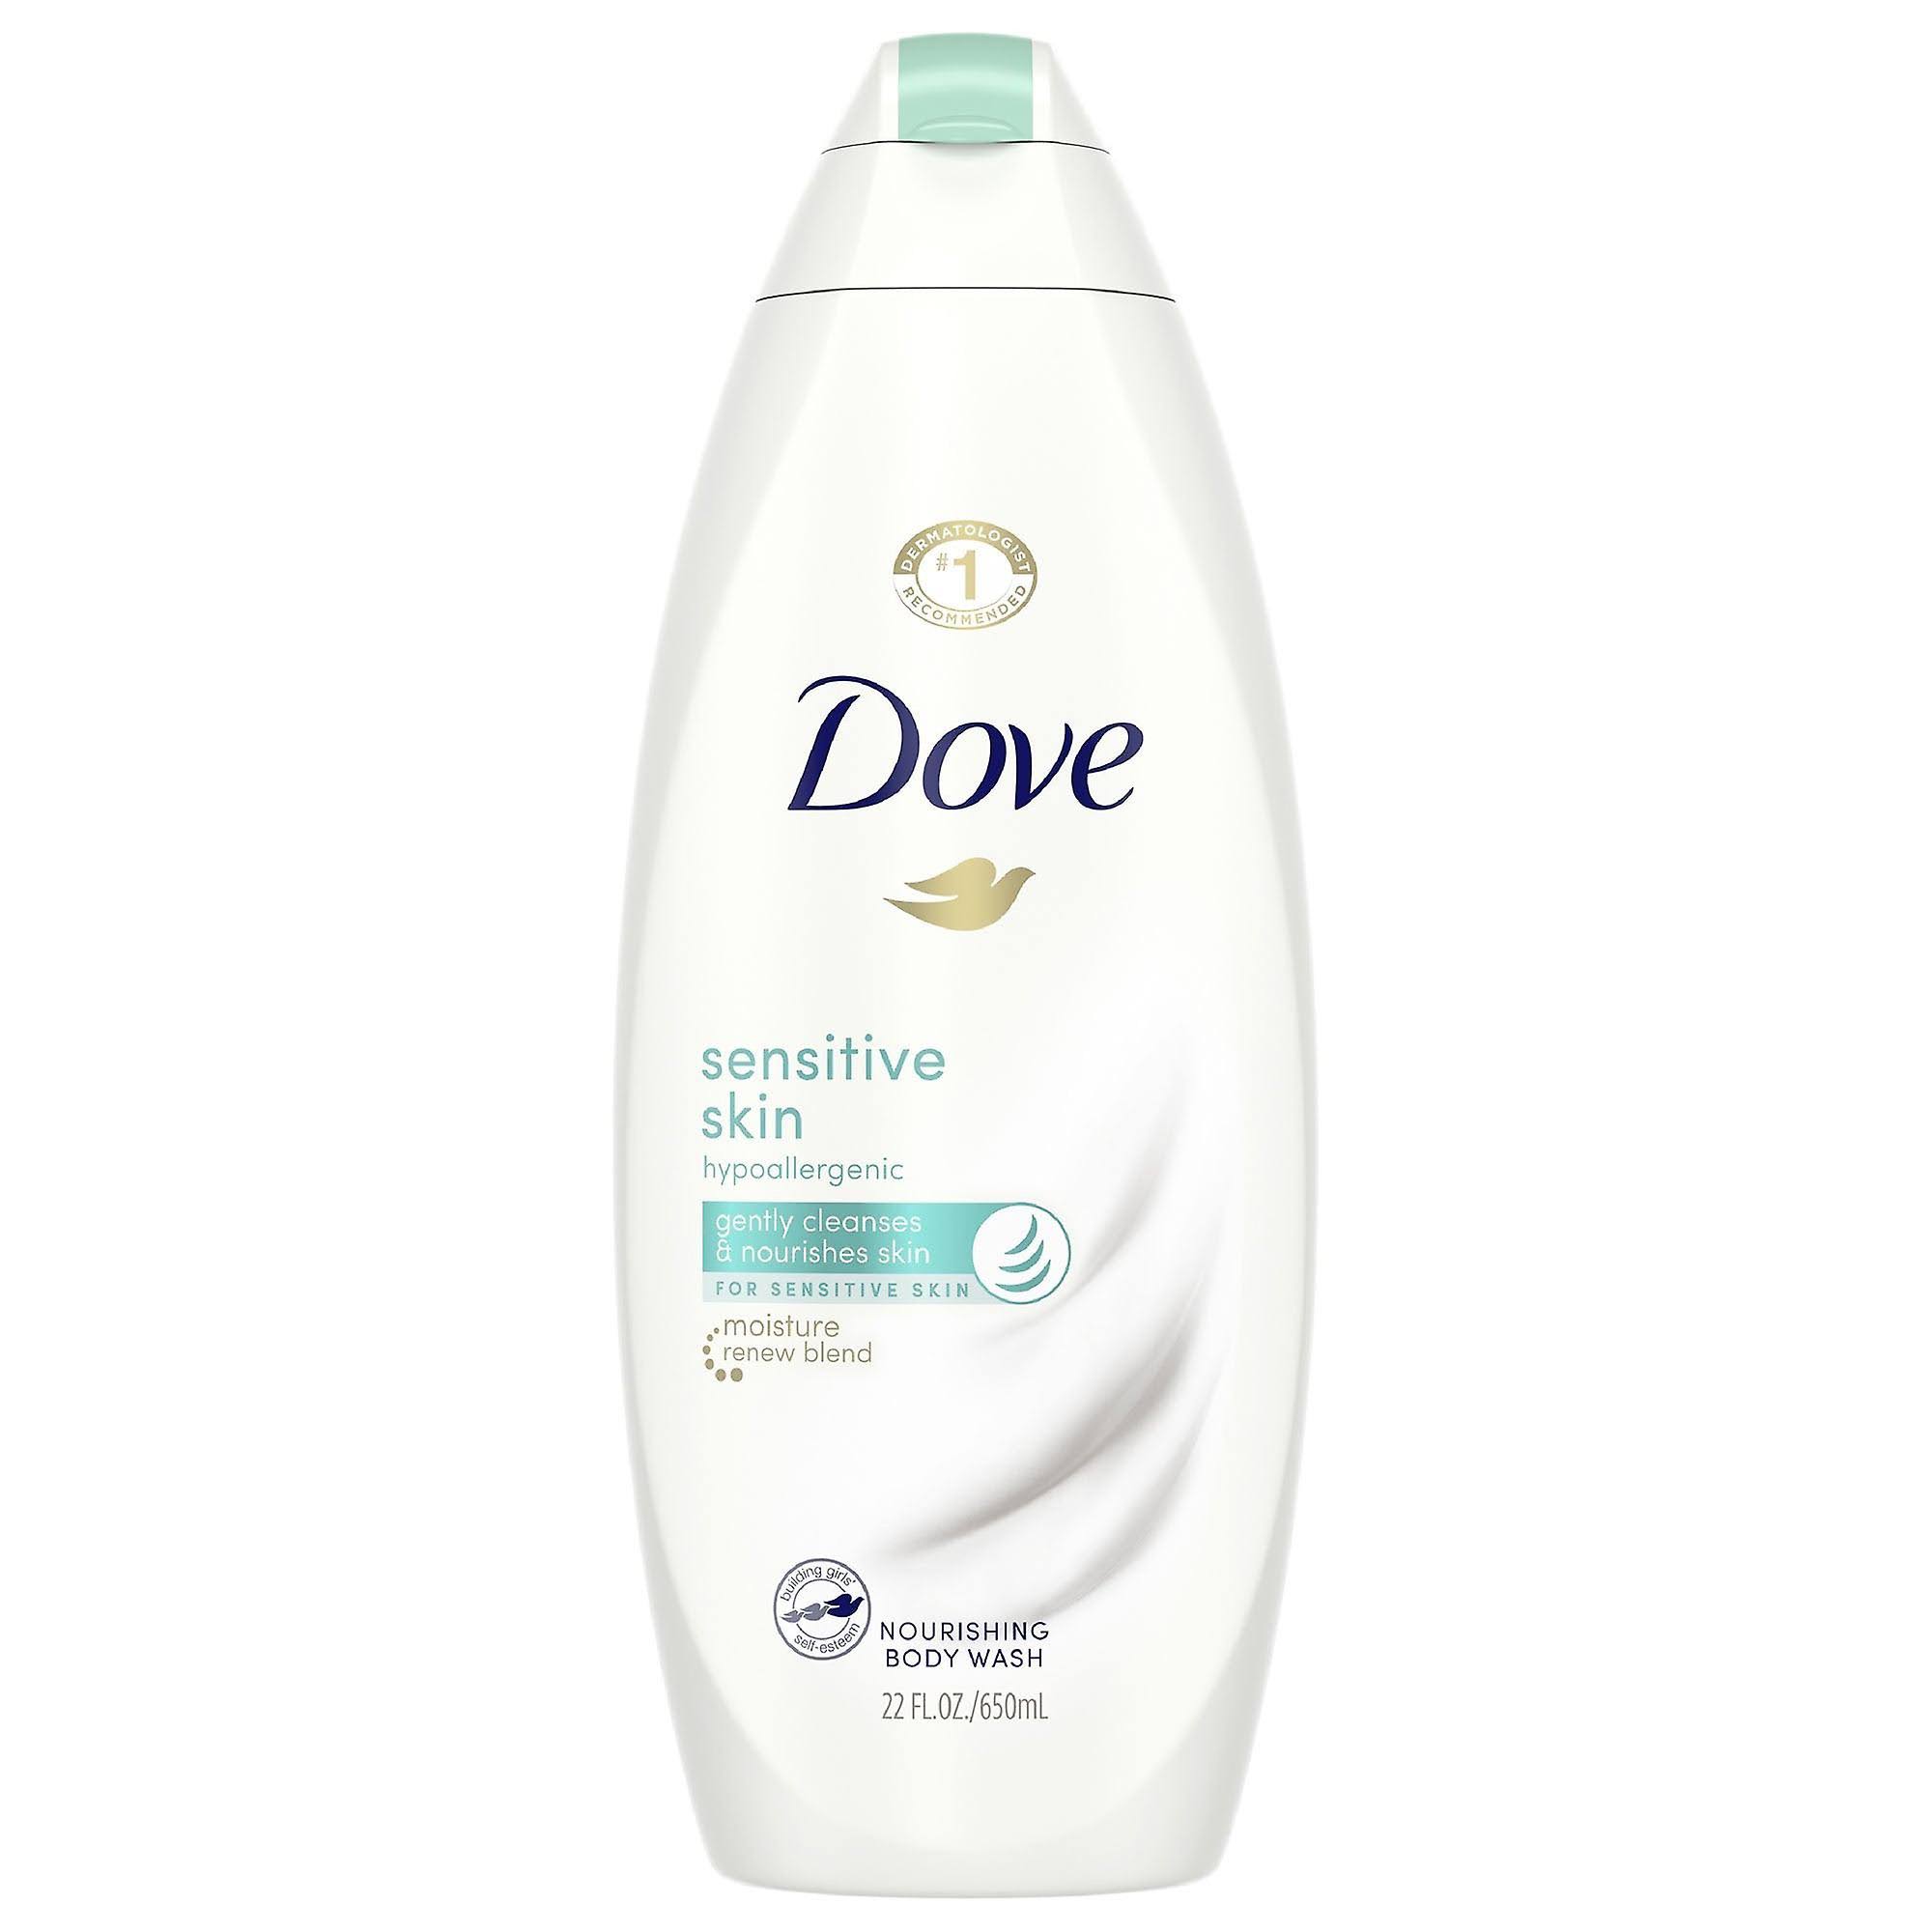 Dove Body Wash - Sensitive Skin, 22oz